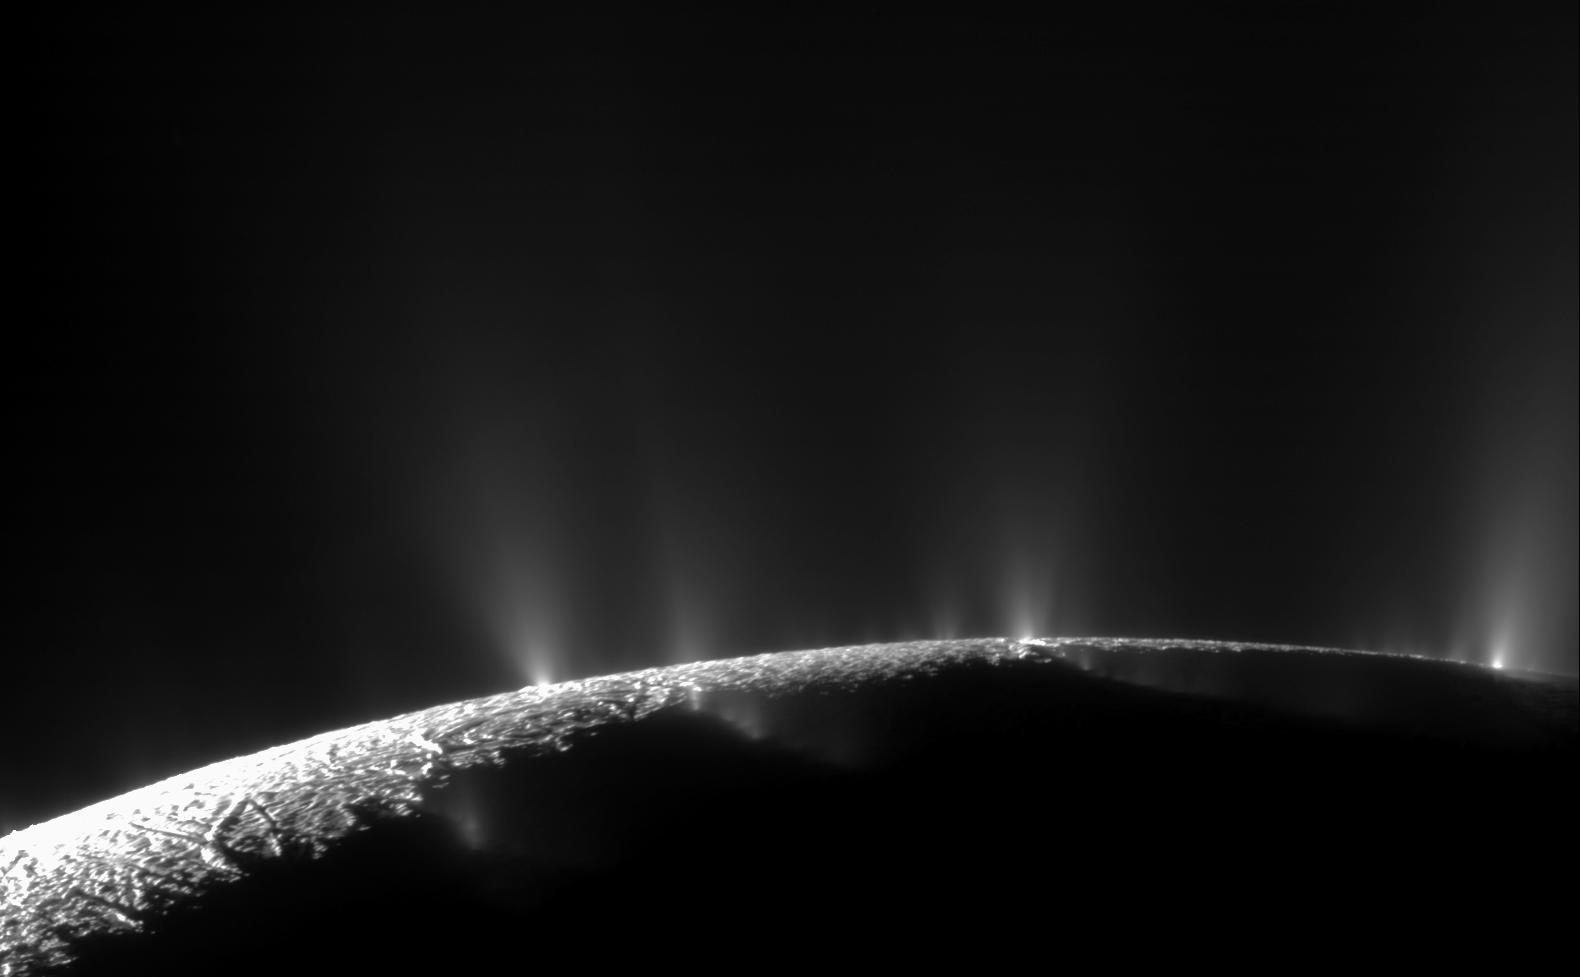 A Cassini-űrszonda által az Enceladus gejzírjeiről készített 2010-es felvétel